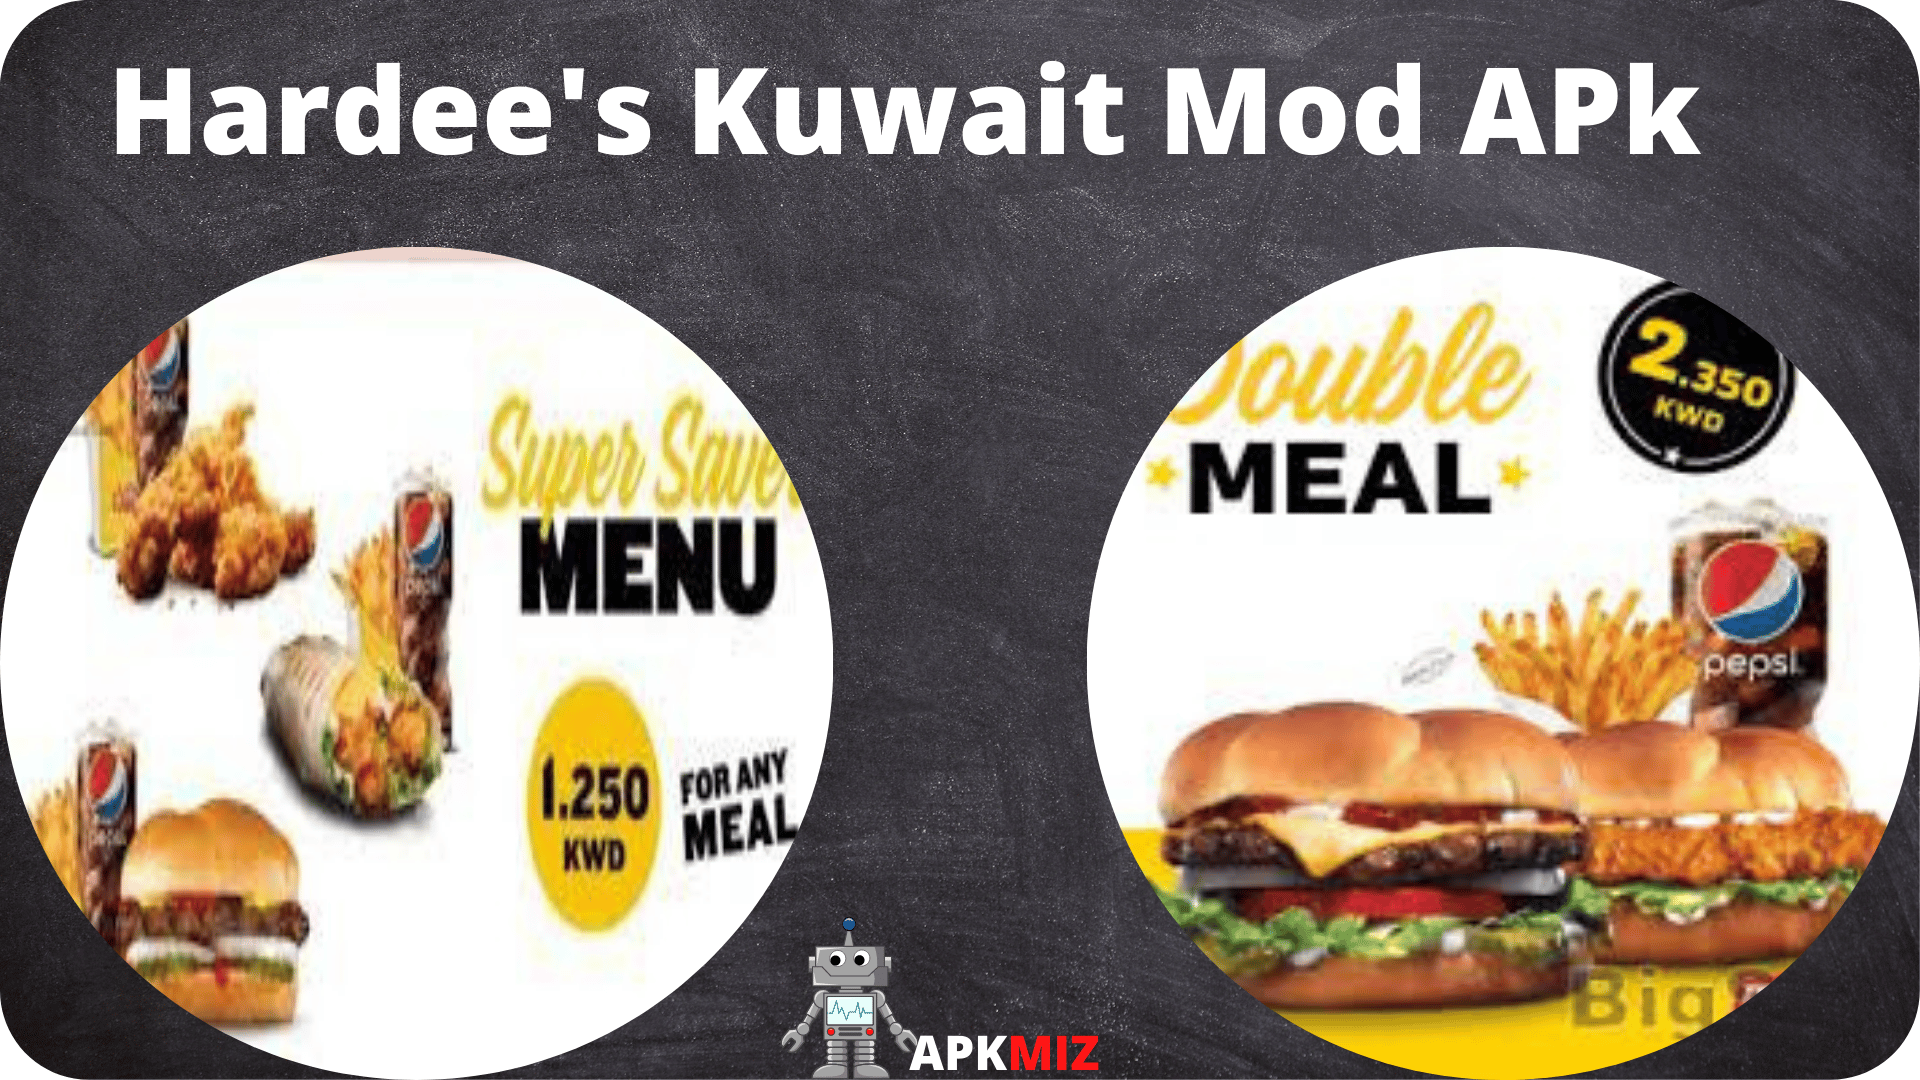 Hardee's Kuwait Mod APk